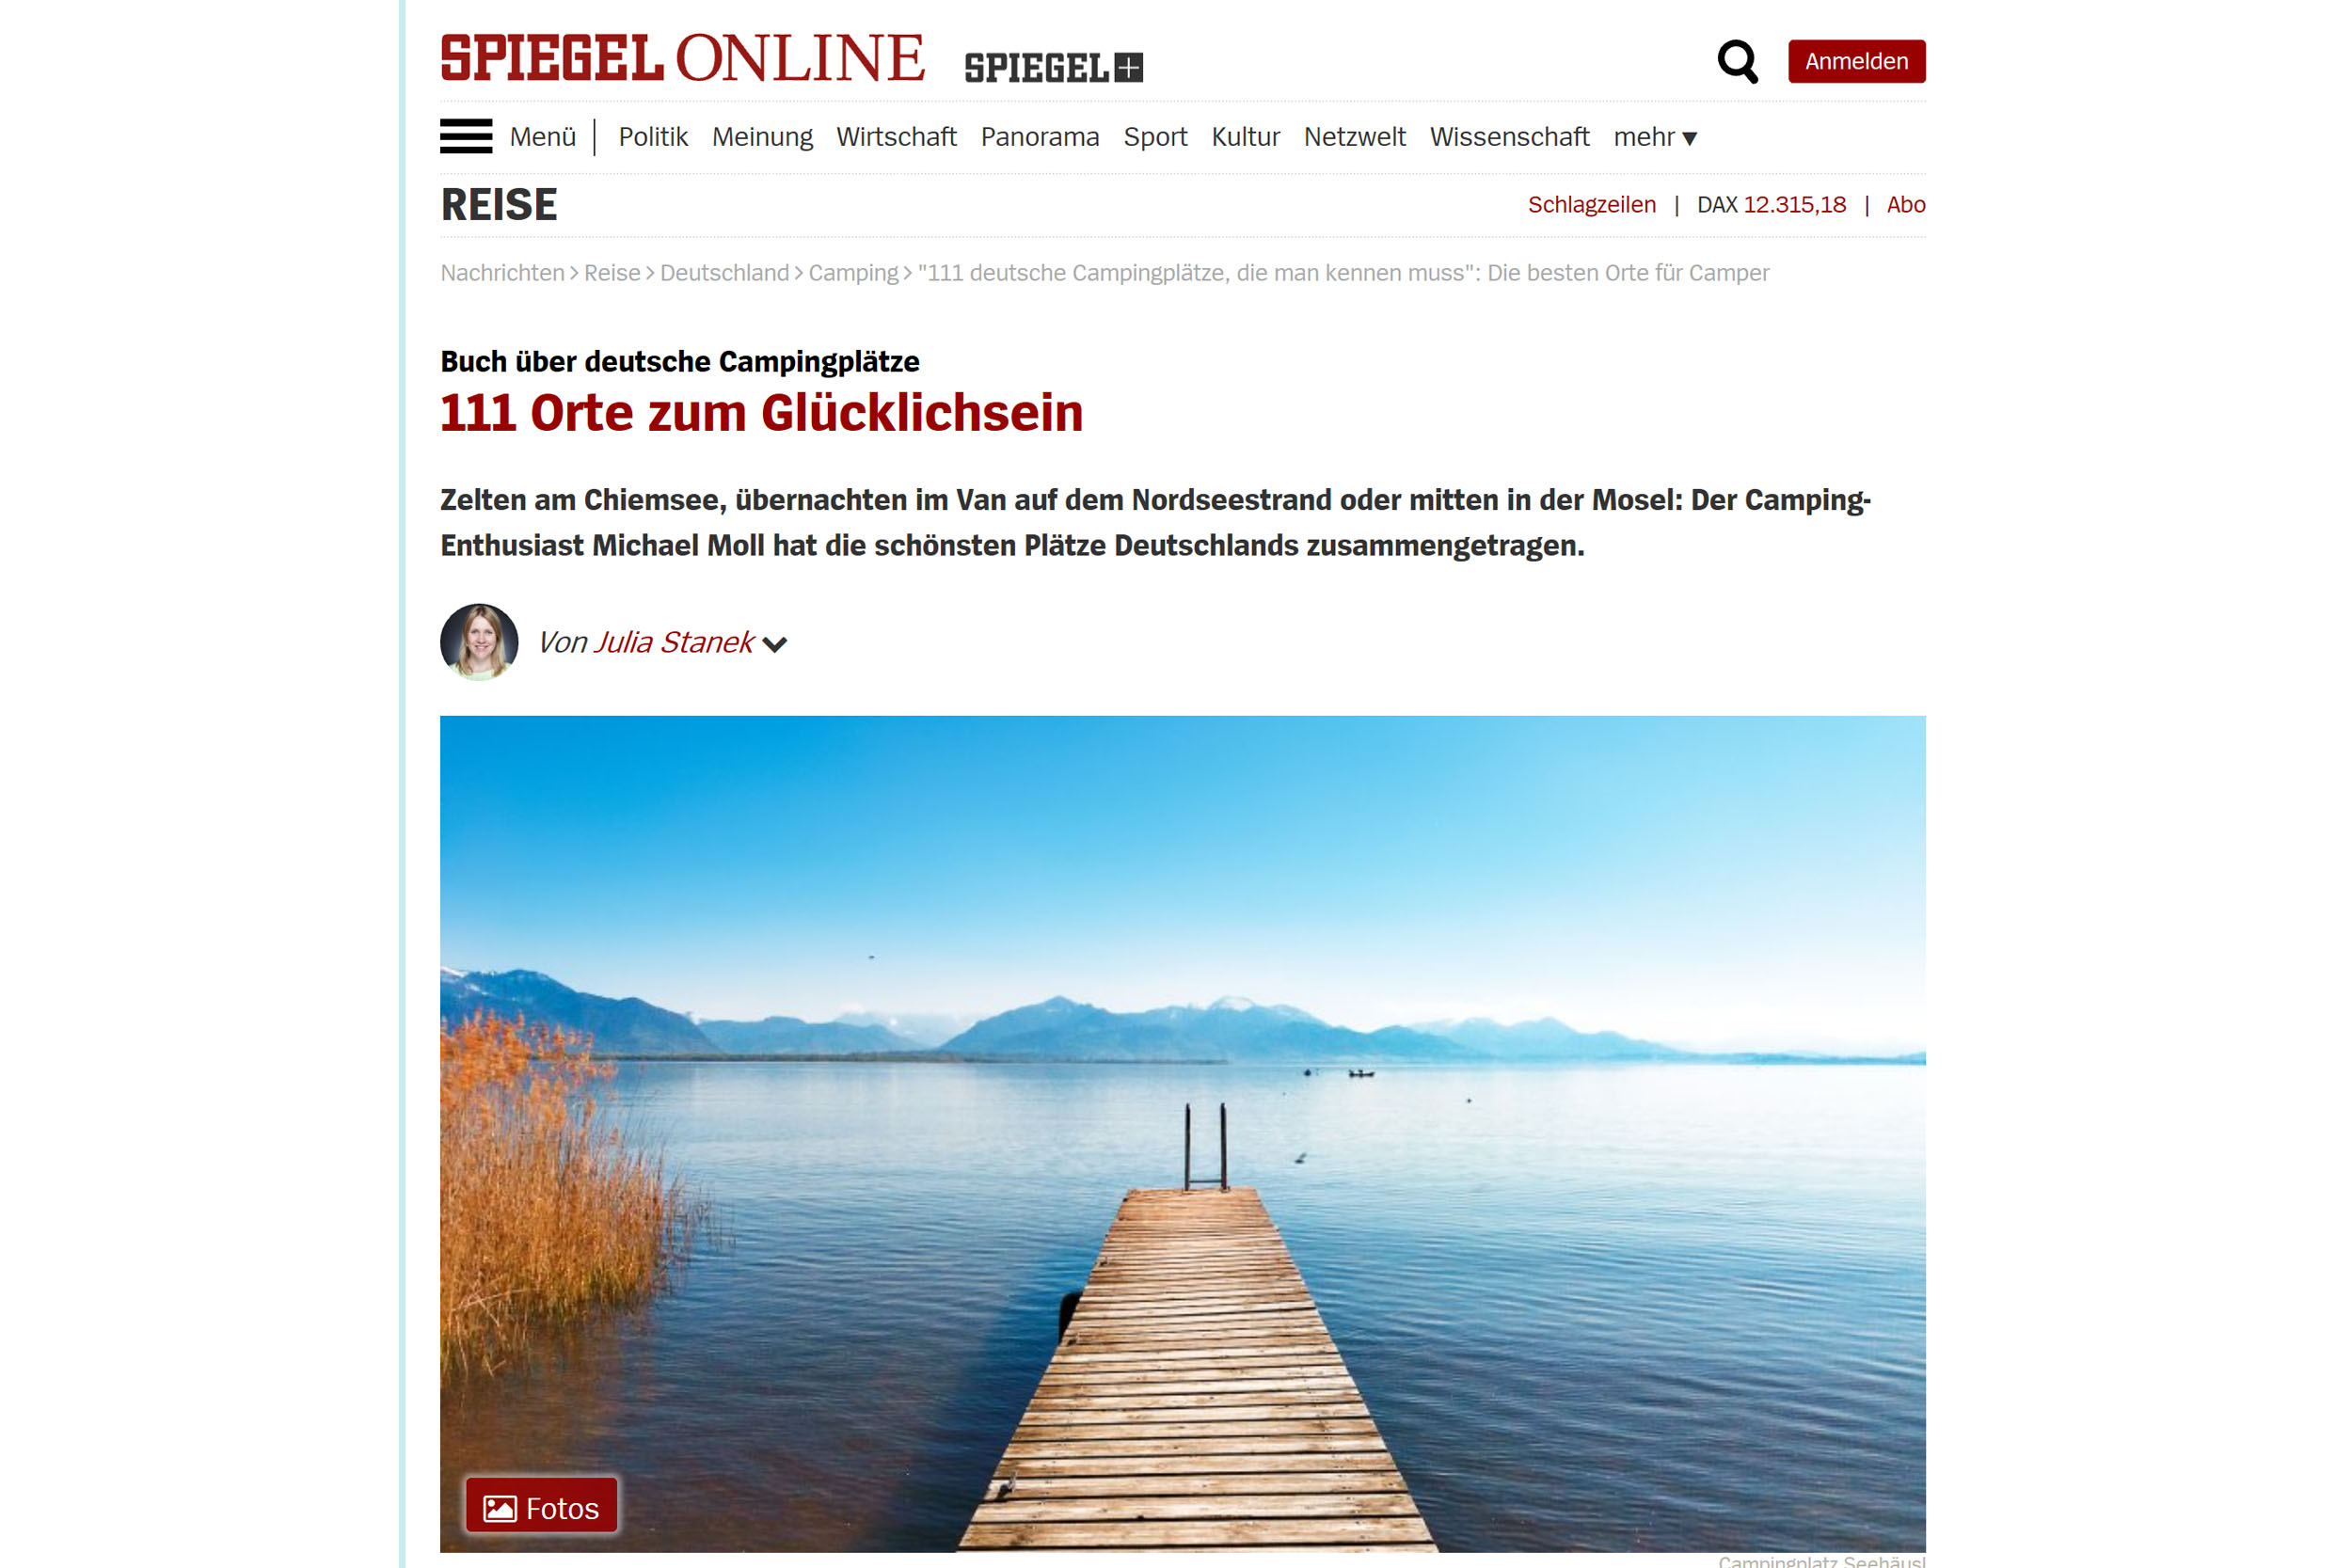 Buchvorstellung bei Spiegel Online - Die Weltenbummler